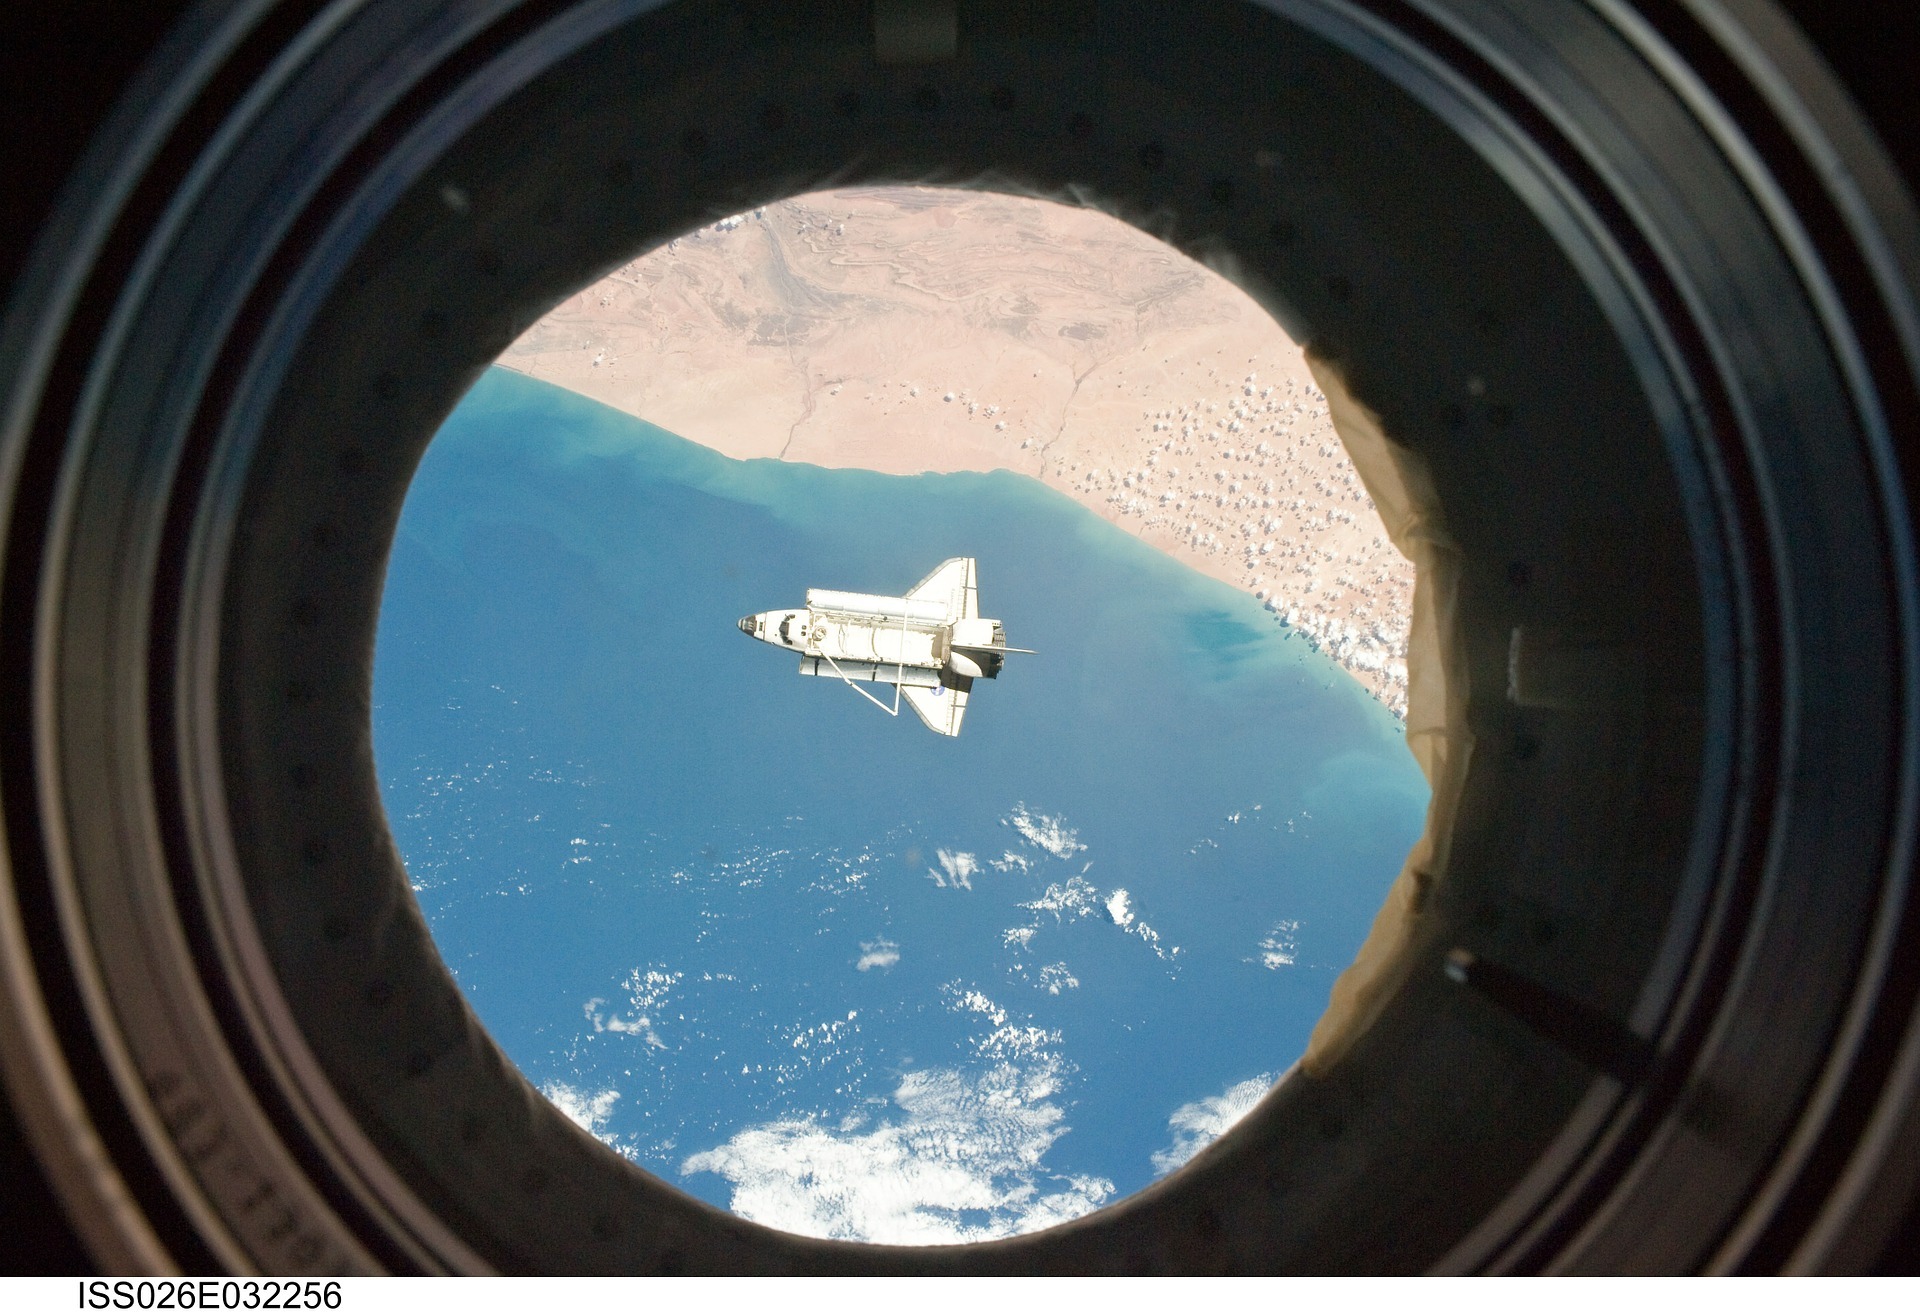 Raumstation ISS und die Schwerelosigkeit auf psd2011.de